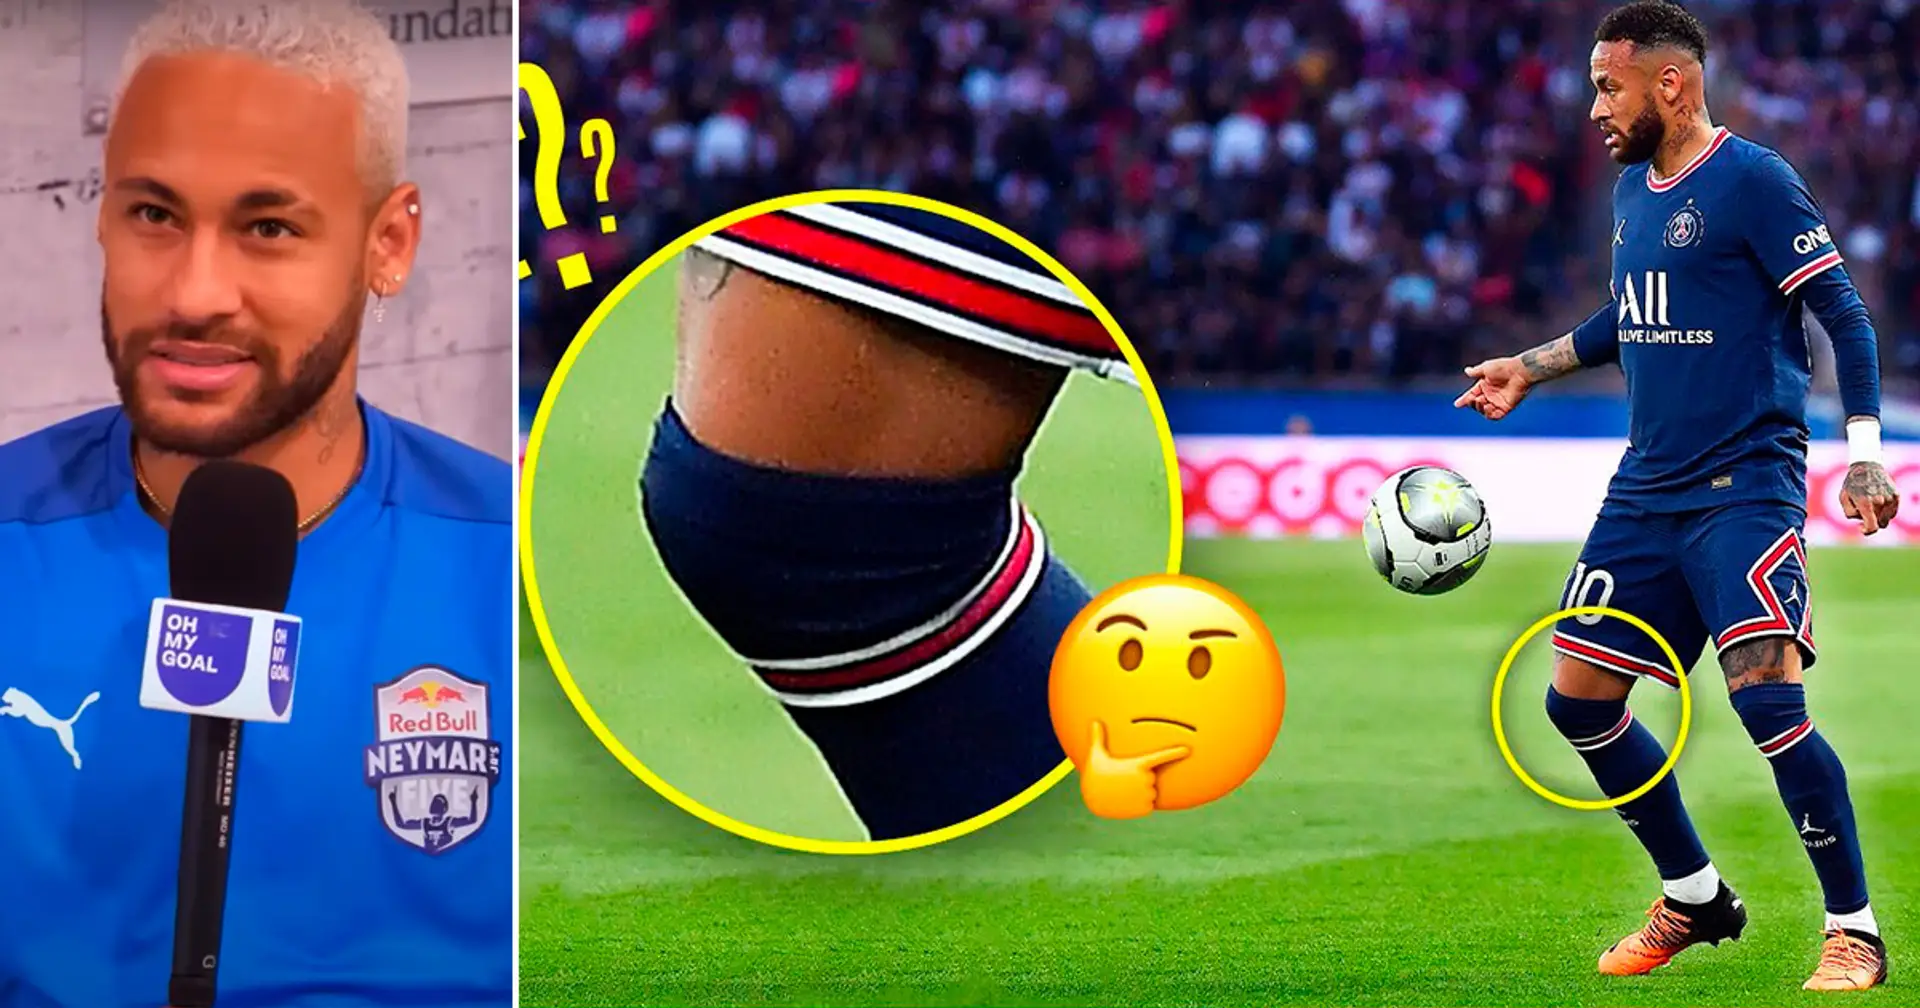 Warum spielt Neymar immer mit sehr langen Socken?